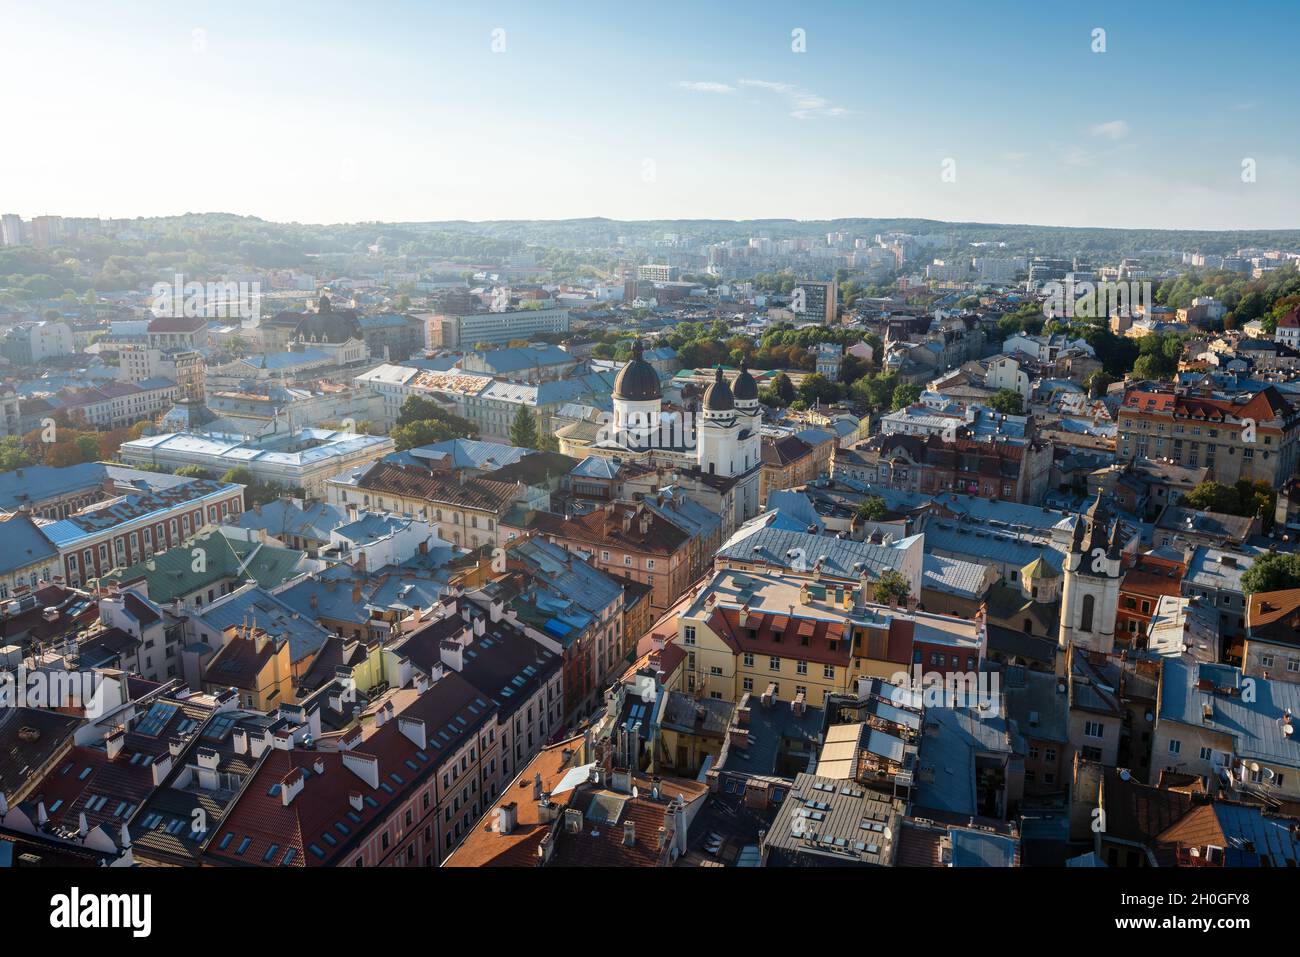 Vue aérienne de Lviv avec l'église de Transfiguration (Eglise catholique grecque) - Lviv, Ukraine Banque D'Images